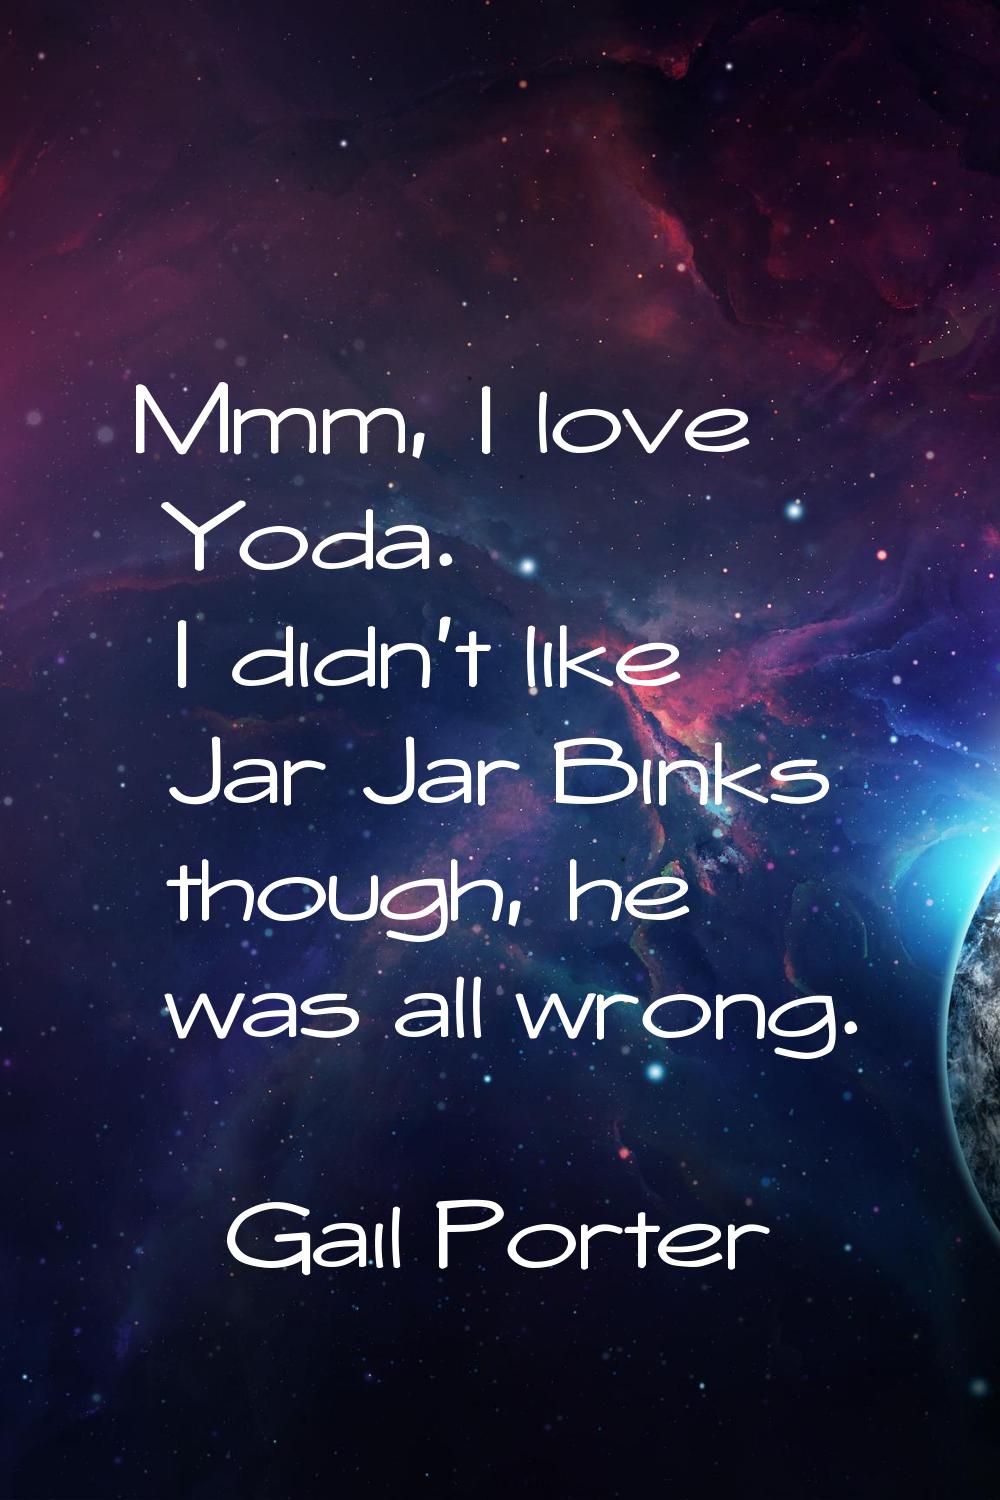 Mmm, I love Yoda. I didn't like Jar Jar Binks though, he was all wrong.